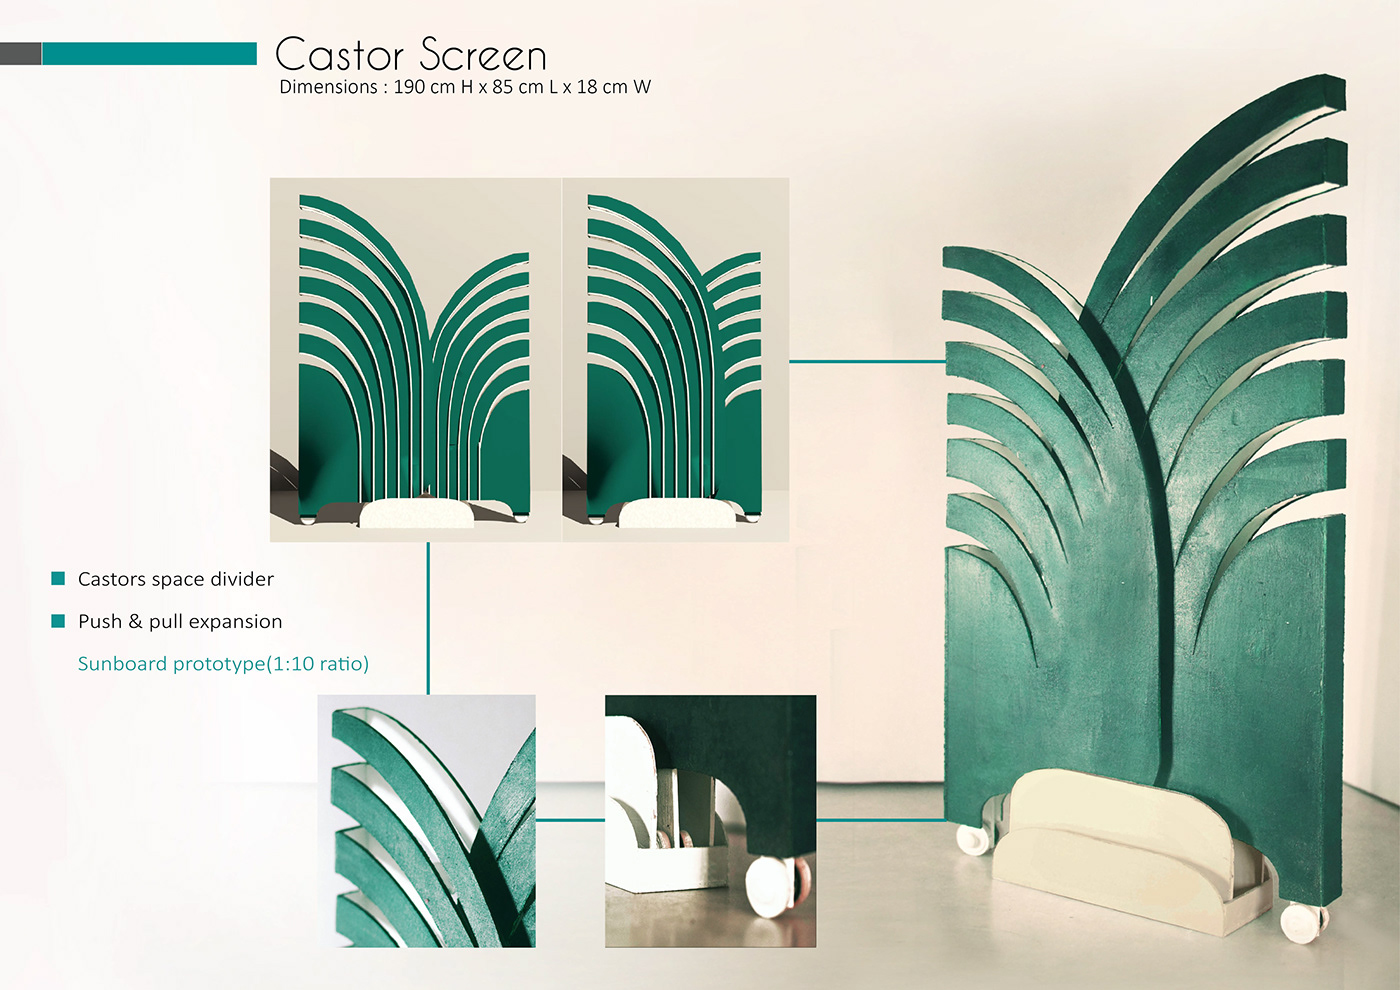 3dmodeling Biophilic Design industrial design  leaf veins Nature product design  Room Divider Room Partition screens Space design